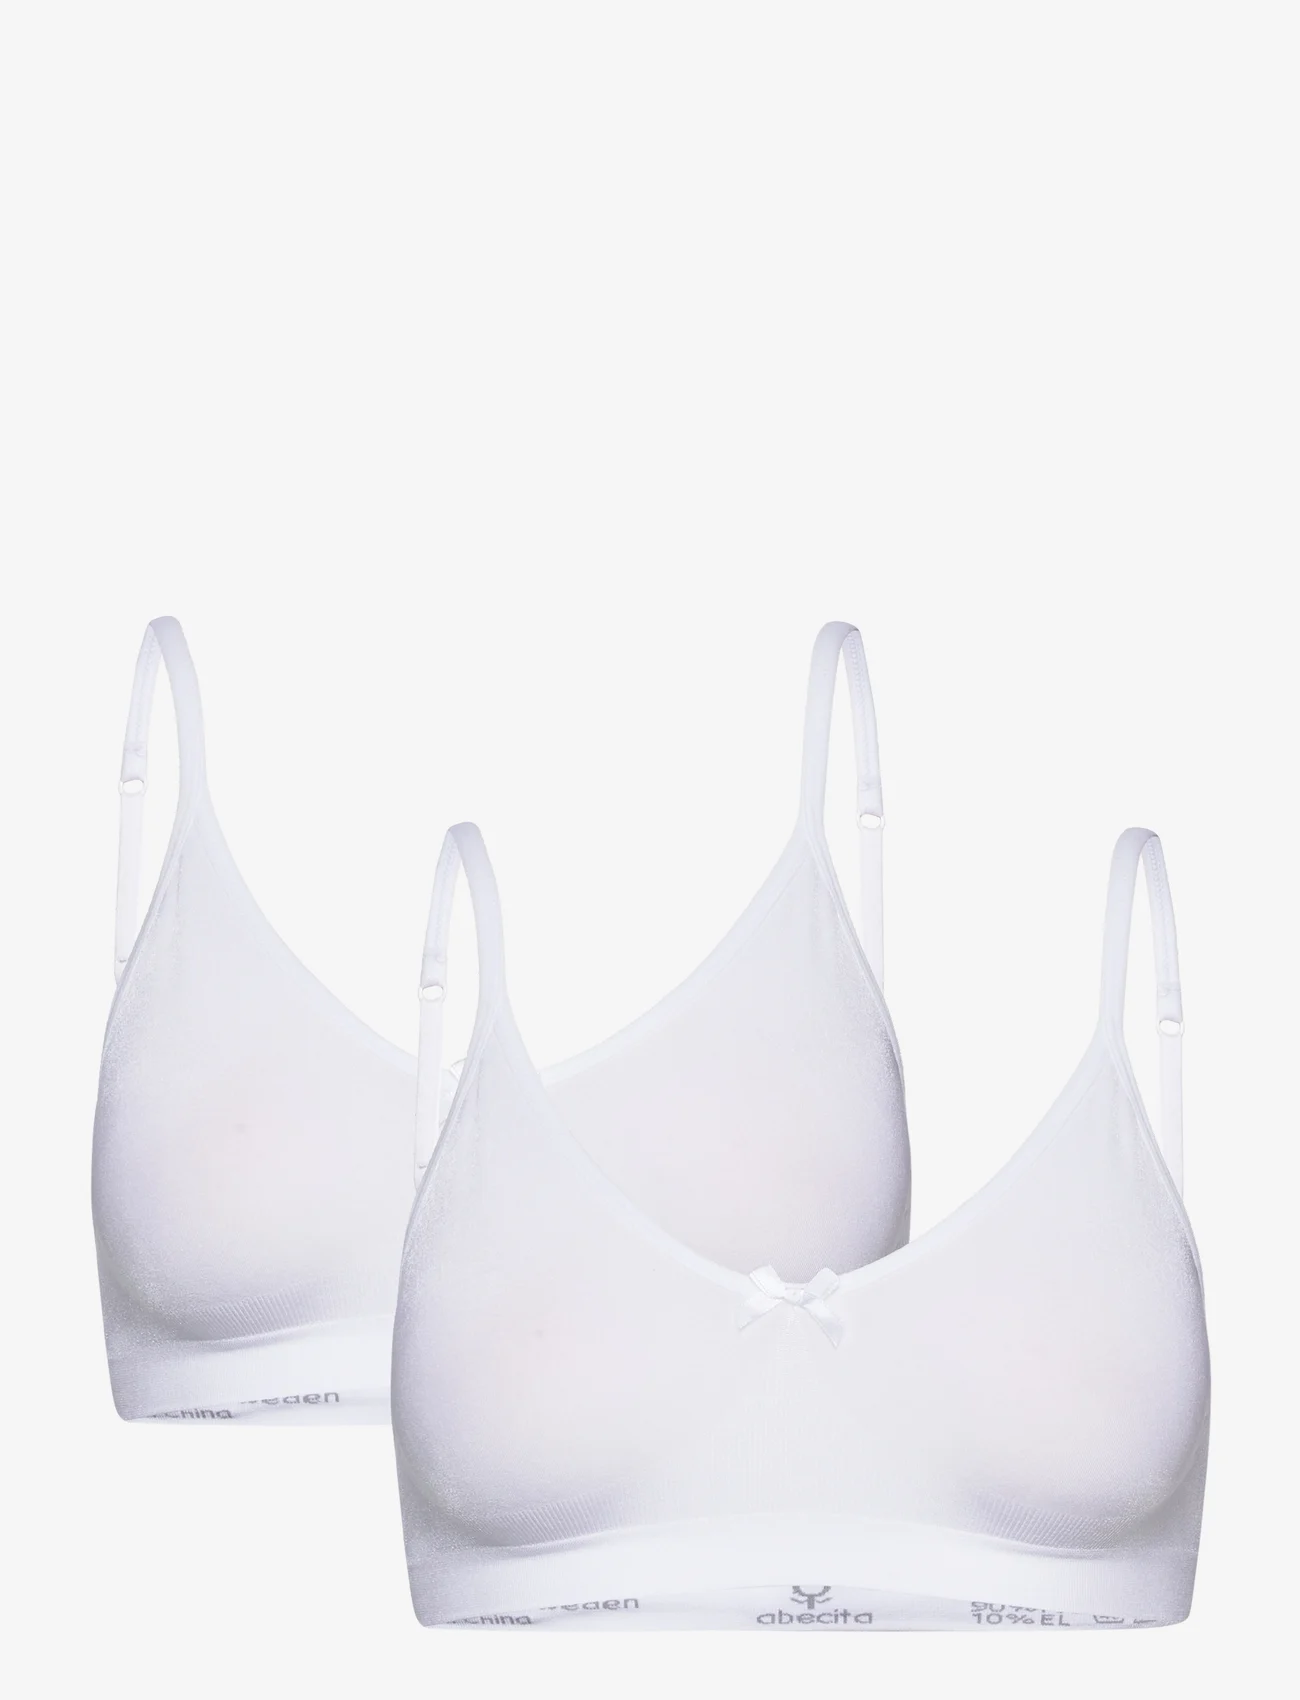 Abecita - Little Wonder soft bra 2-pack White - tank top bras - white - 0